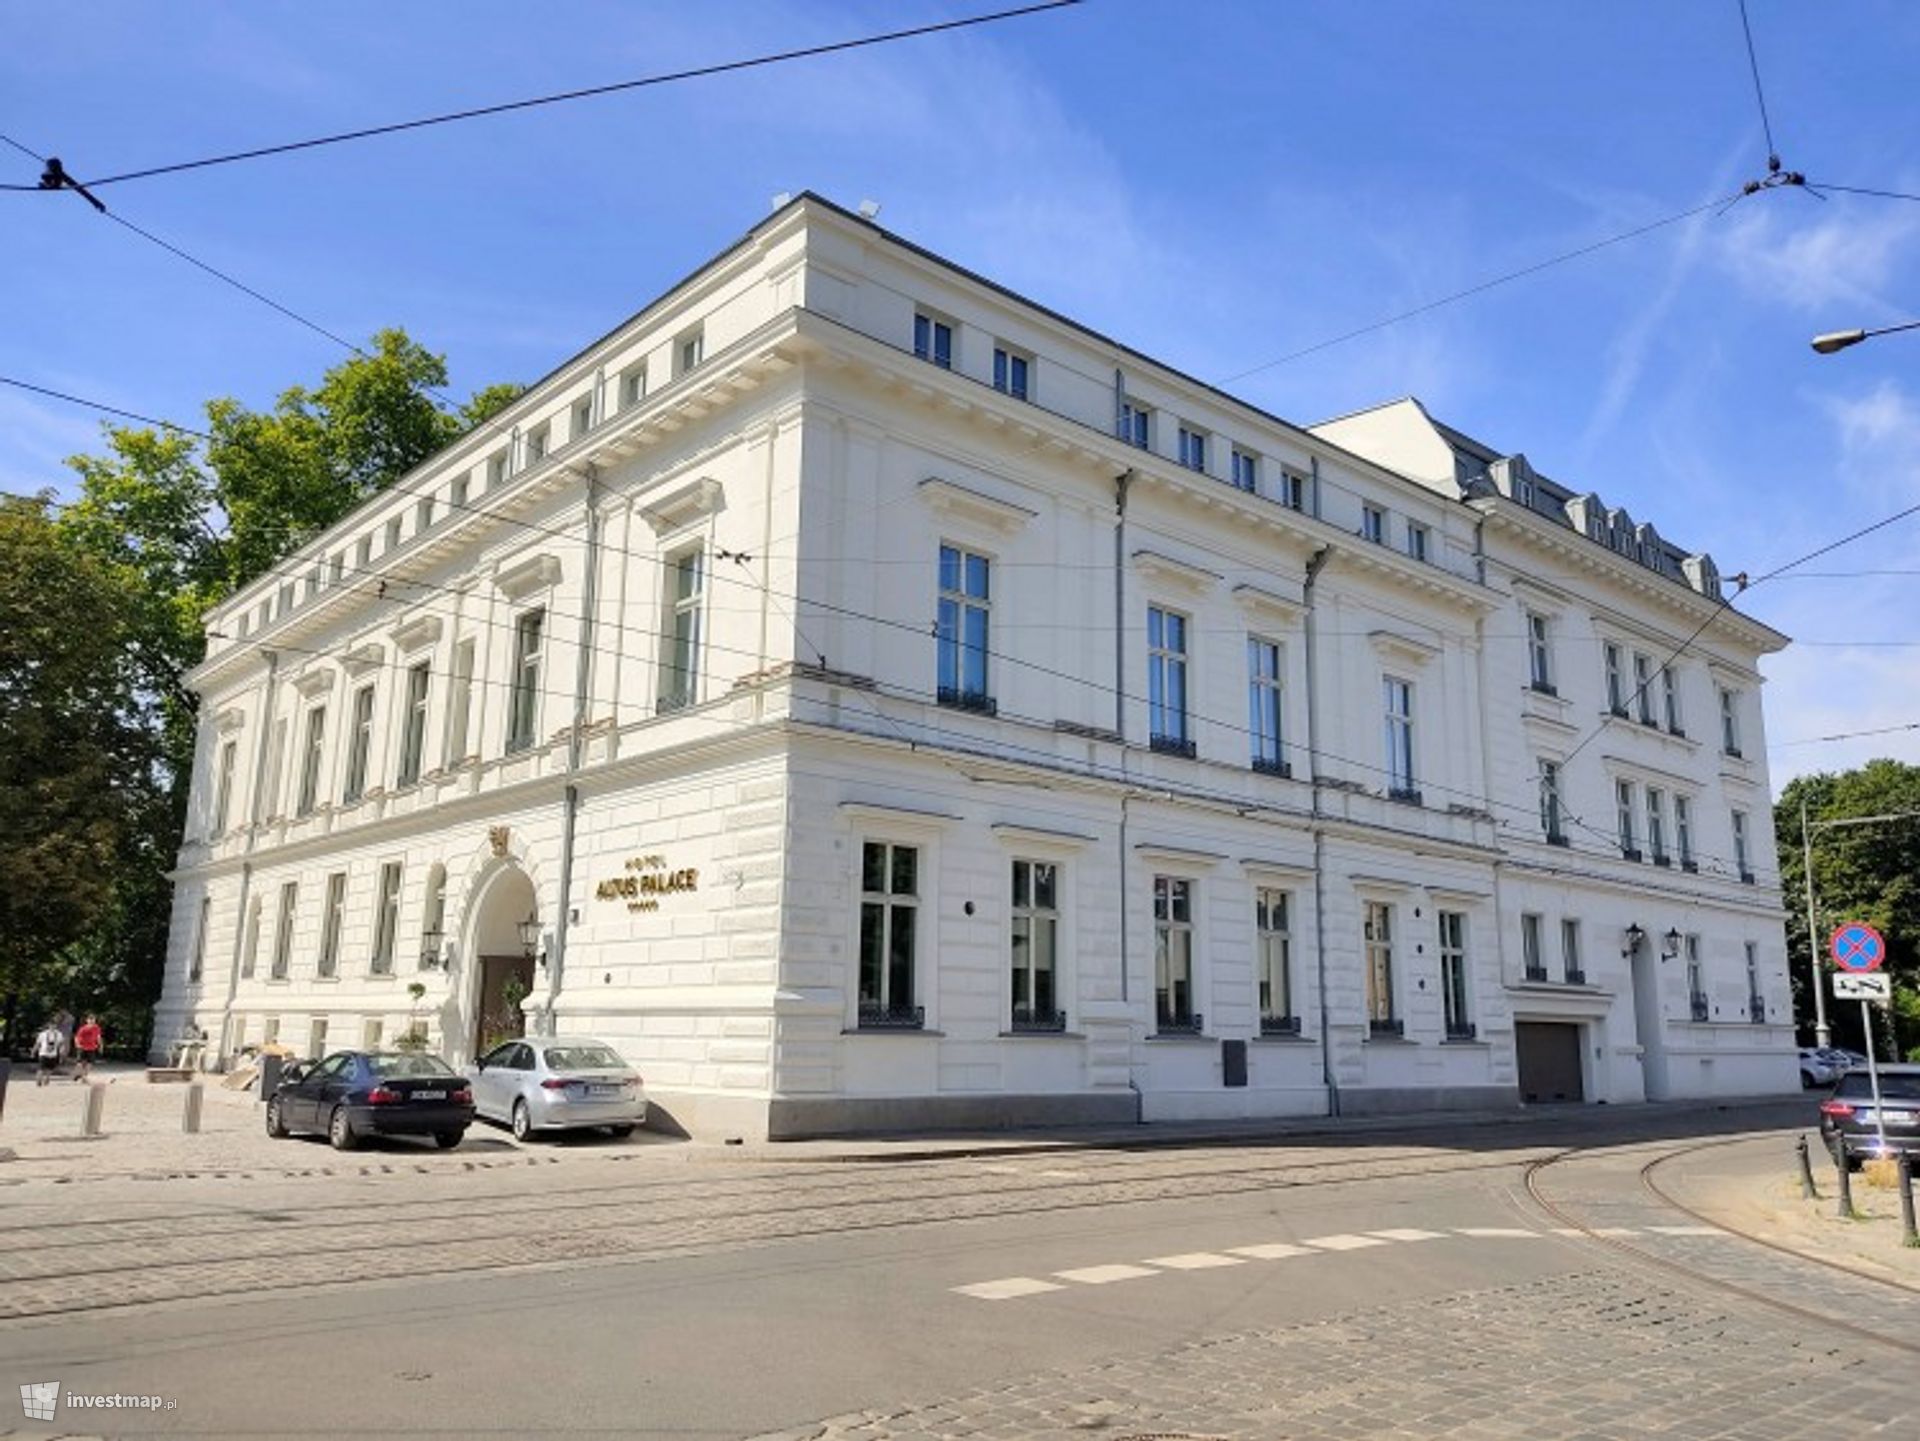 Zakończyła się rewitalizacja zabytkowego Pałacu Leipzigera we Wrocławiu. Powstał w nim hotel Altus Palace 